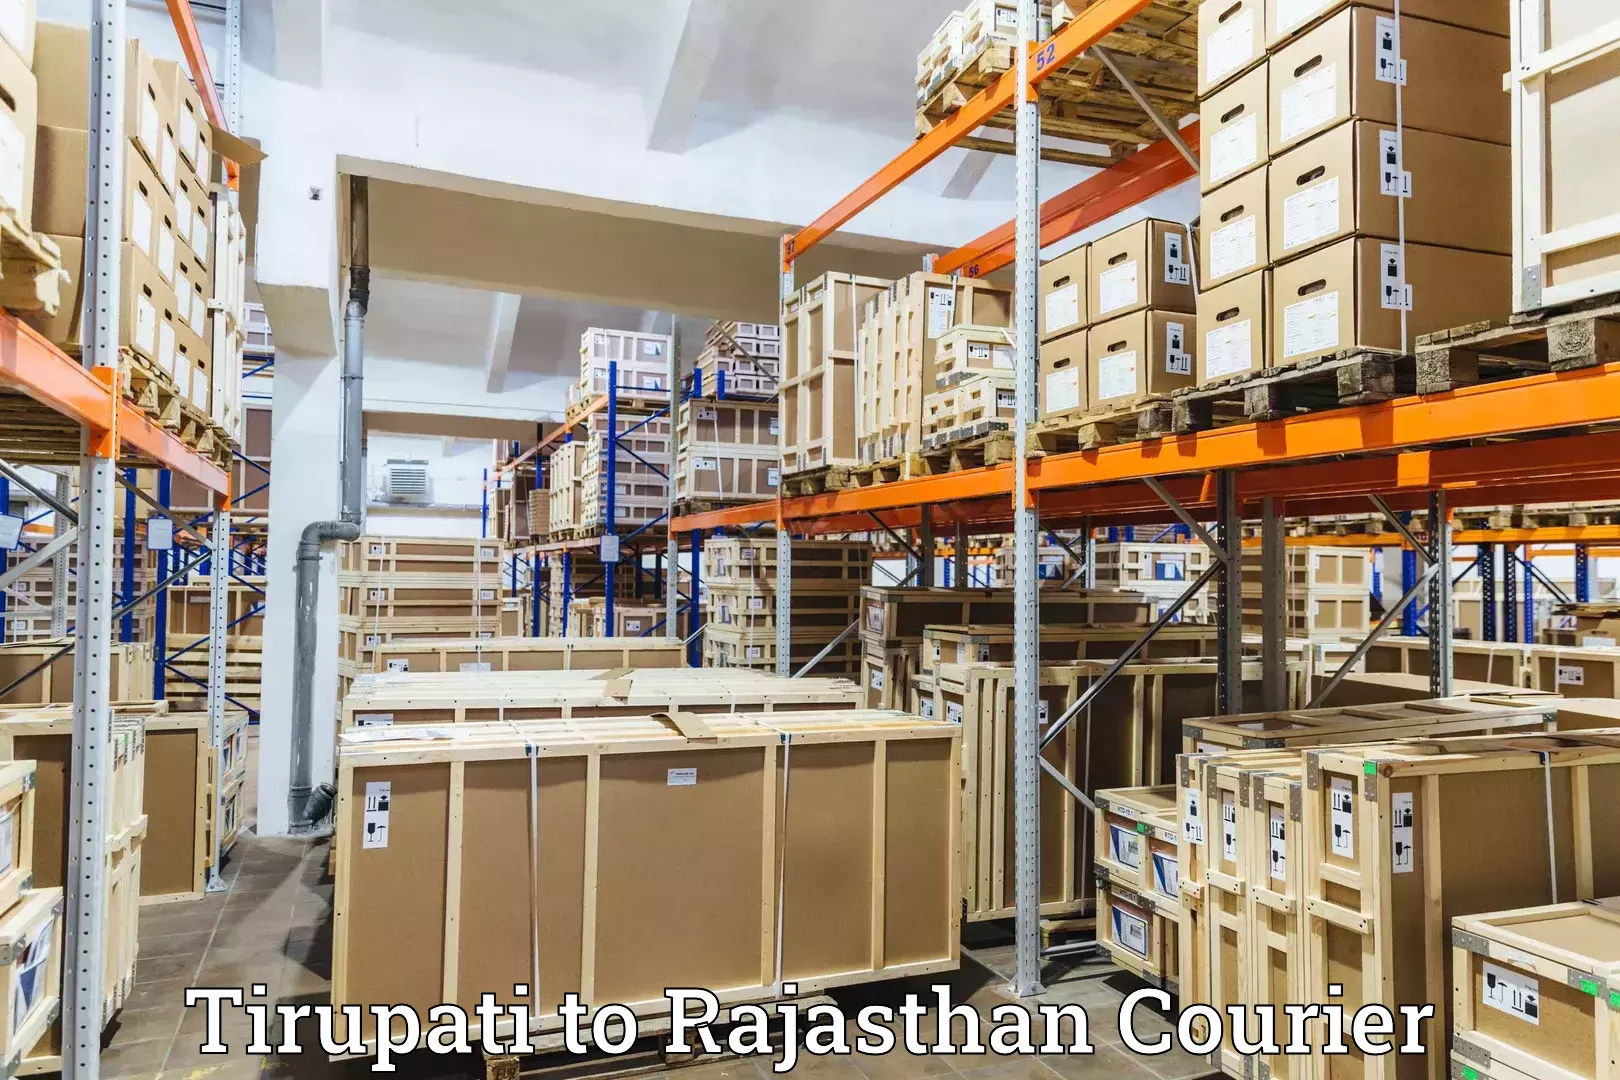 High-capacity courier solutions Tirupati to Bijainagar